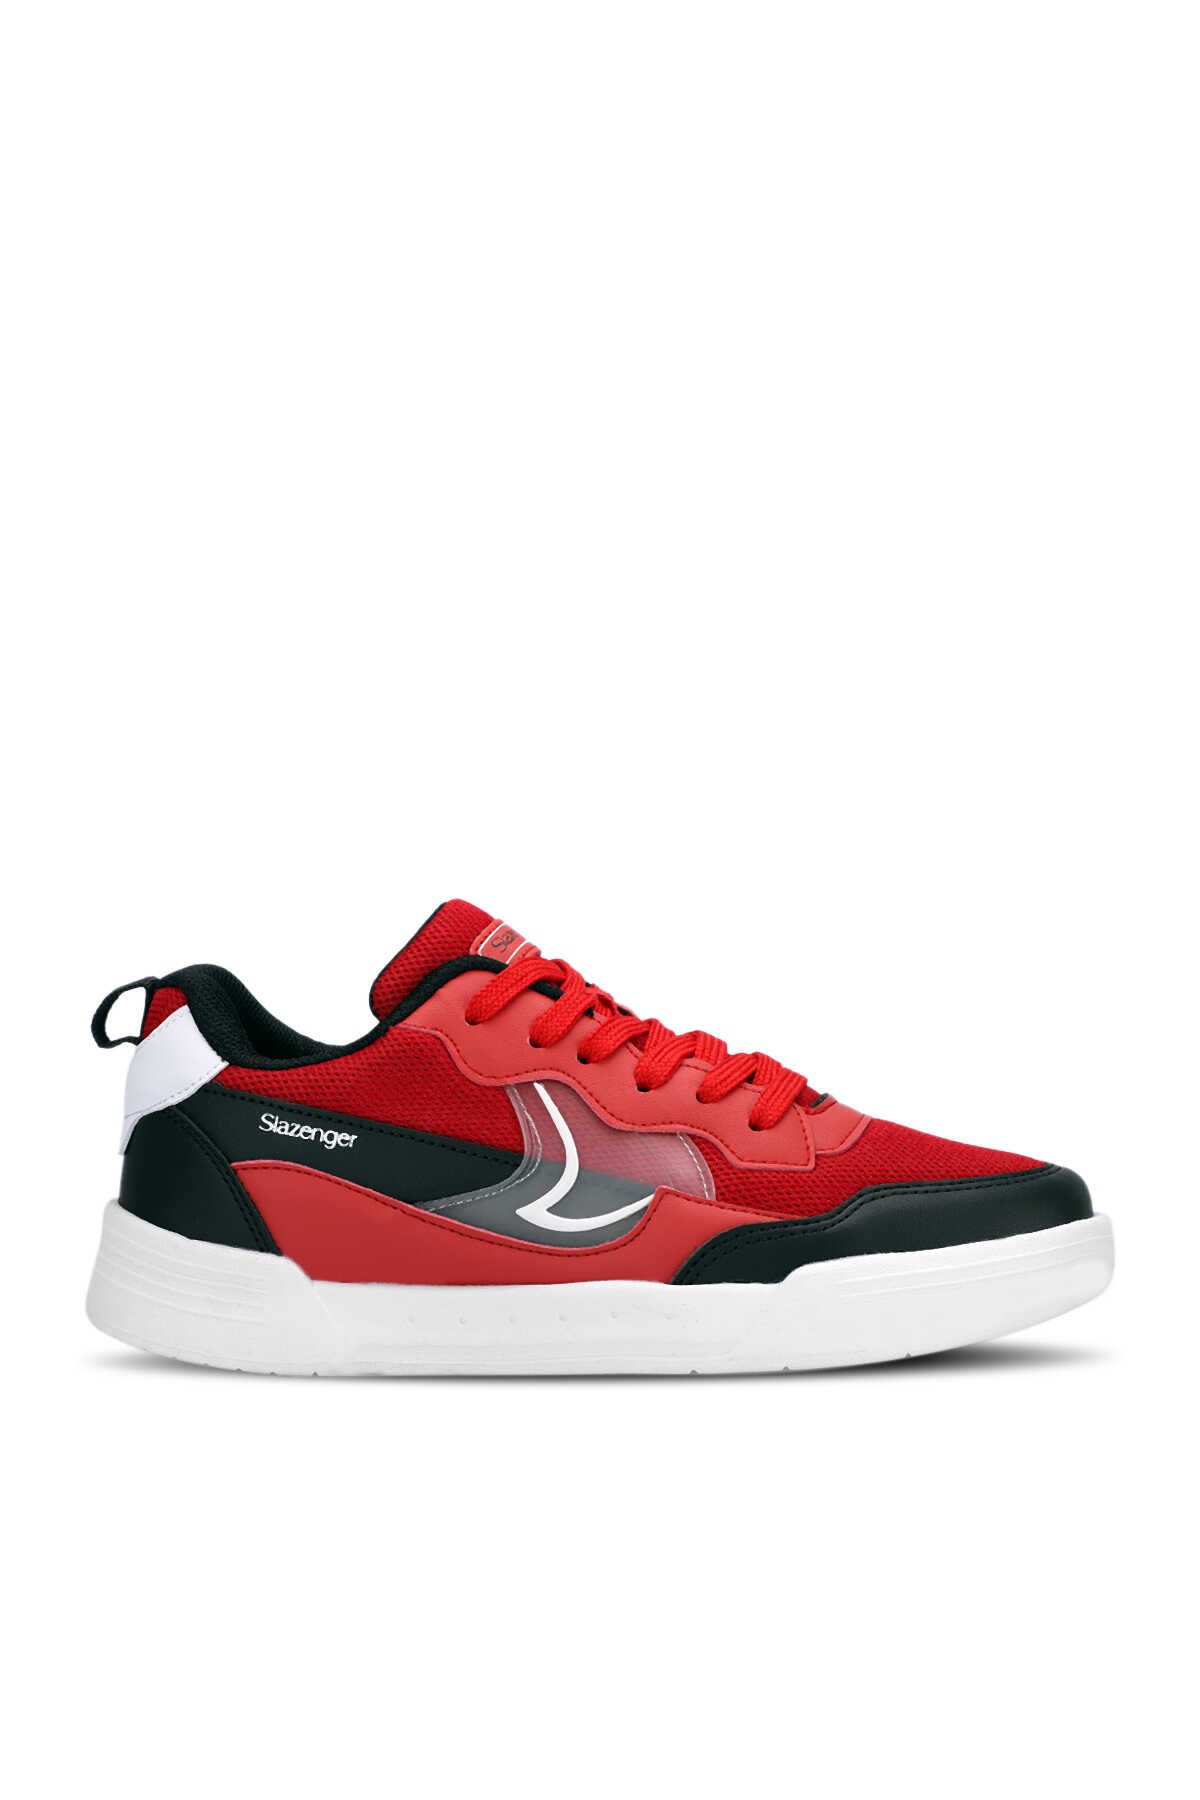 Slazenger - BARBRO Sneaker Kadın Ayakkabı Kırmızı